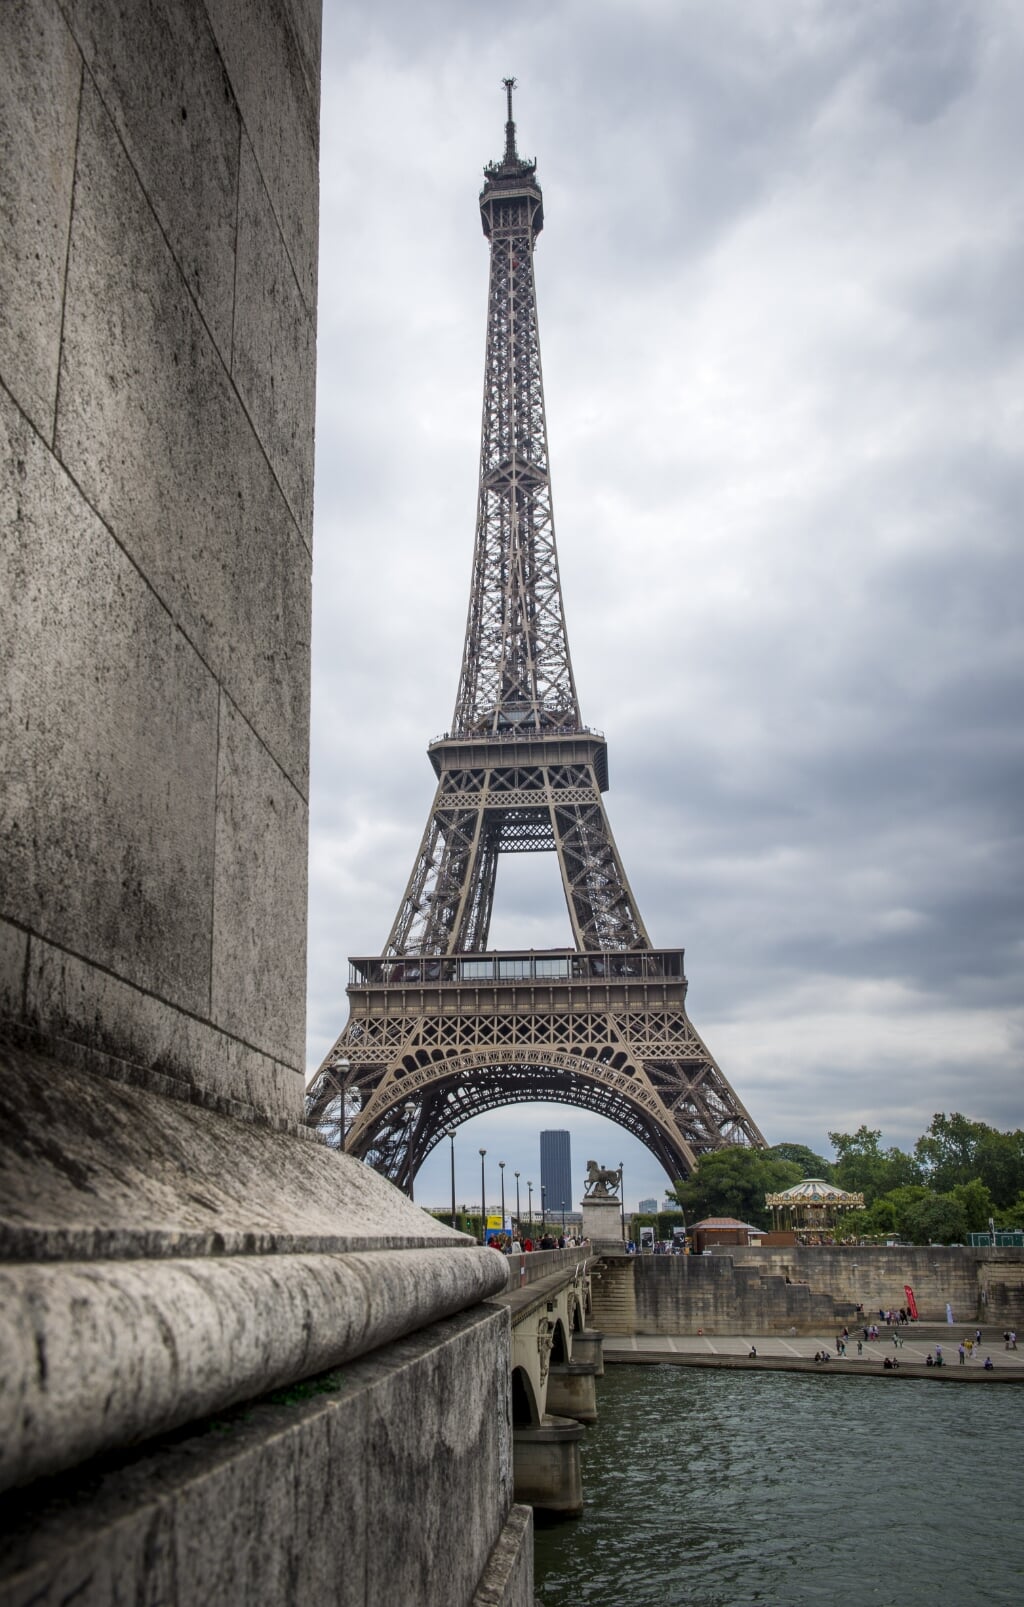 2016-07-28 13:37:12 PARIJS - De Eifel toren in Parijs.
ANP LEX VAN LIESHOUT